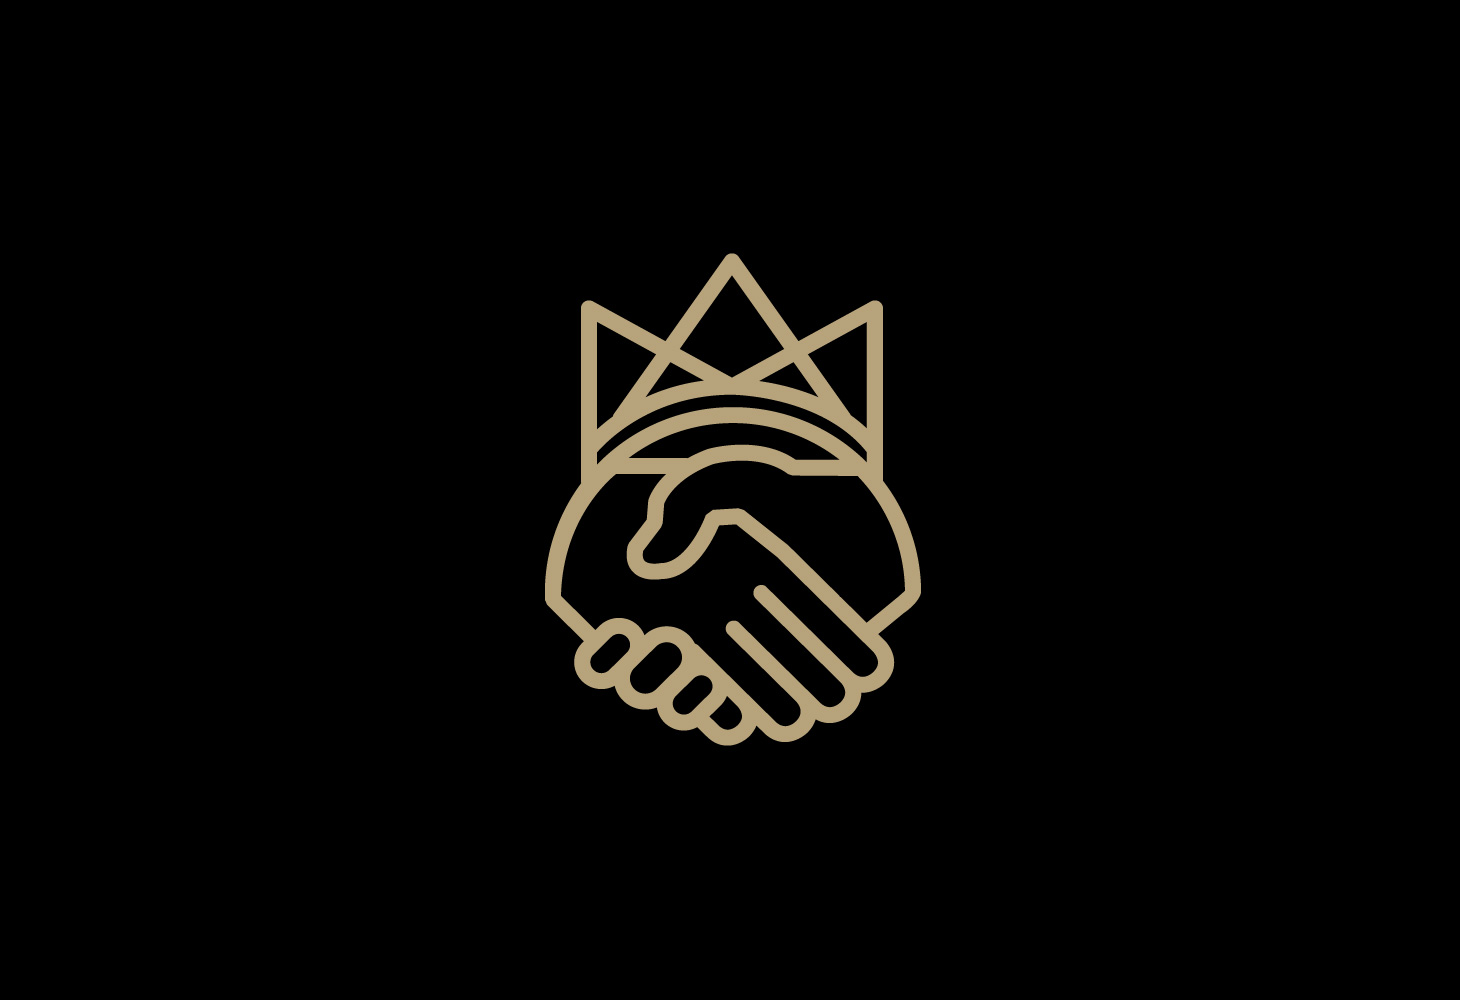 Royal Union - Logomark - An icon